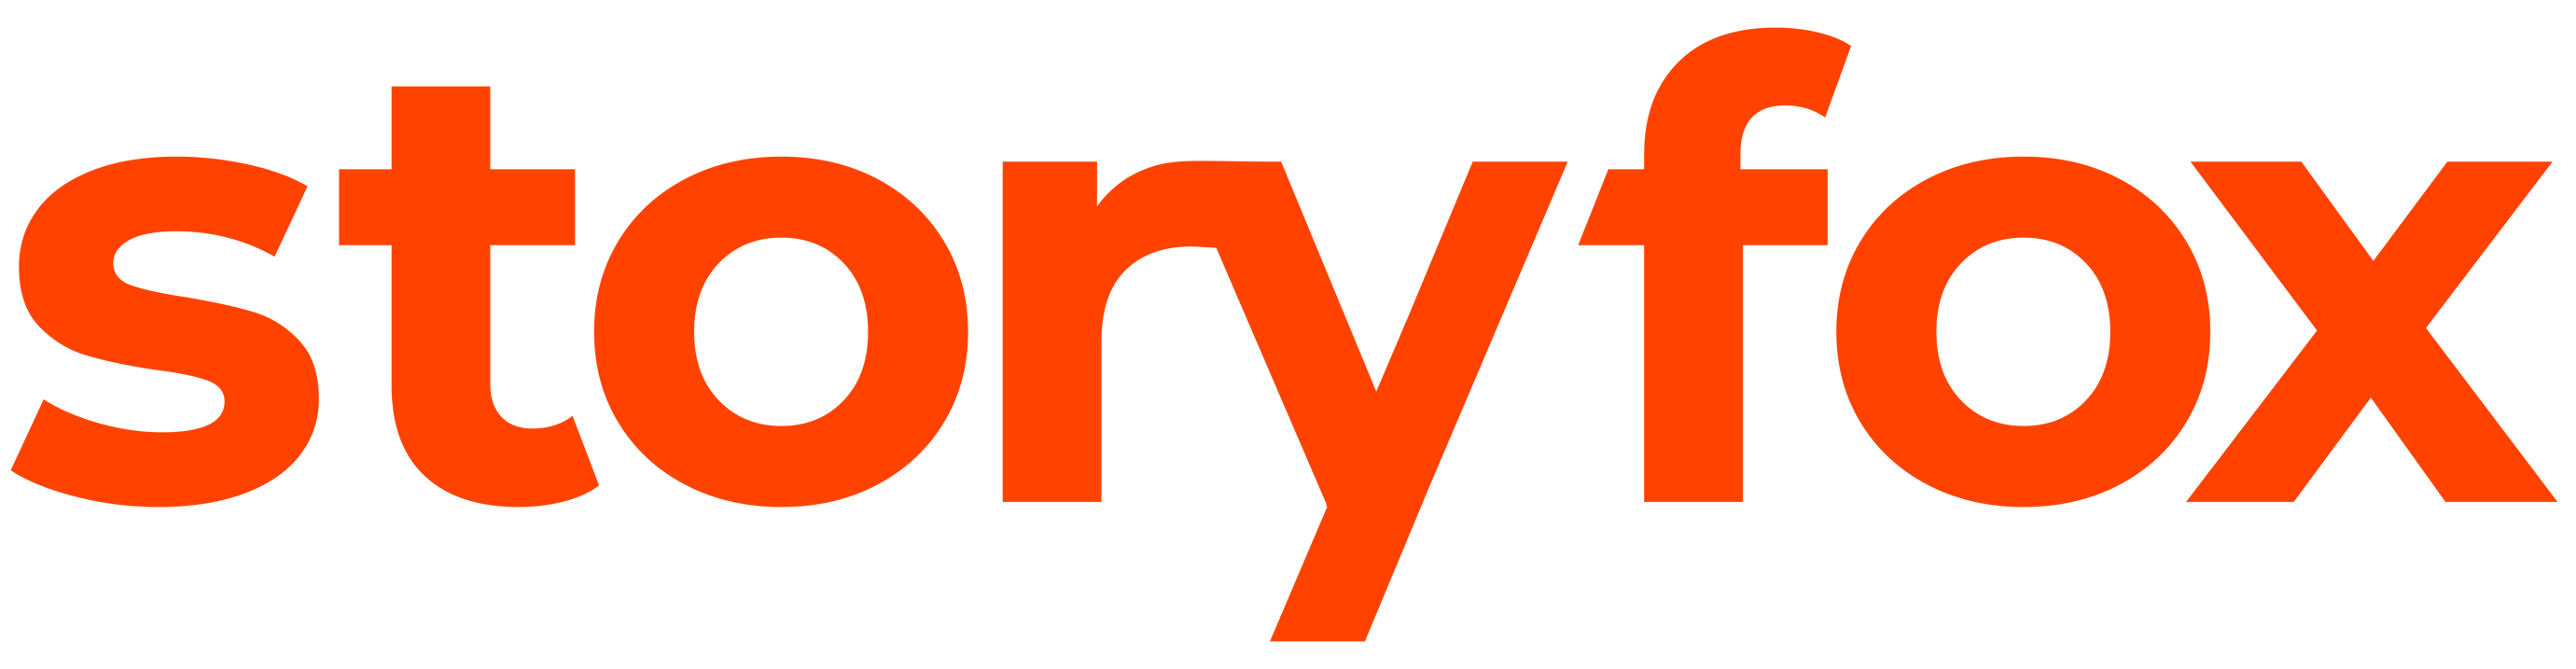 storyfox-logo-2021-site-01